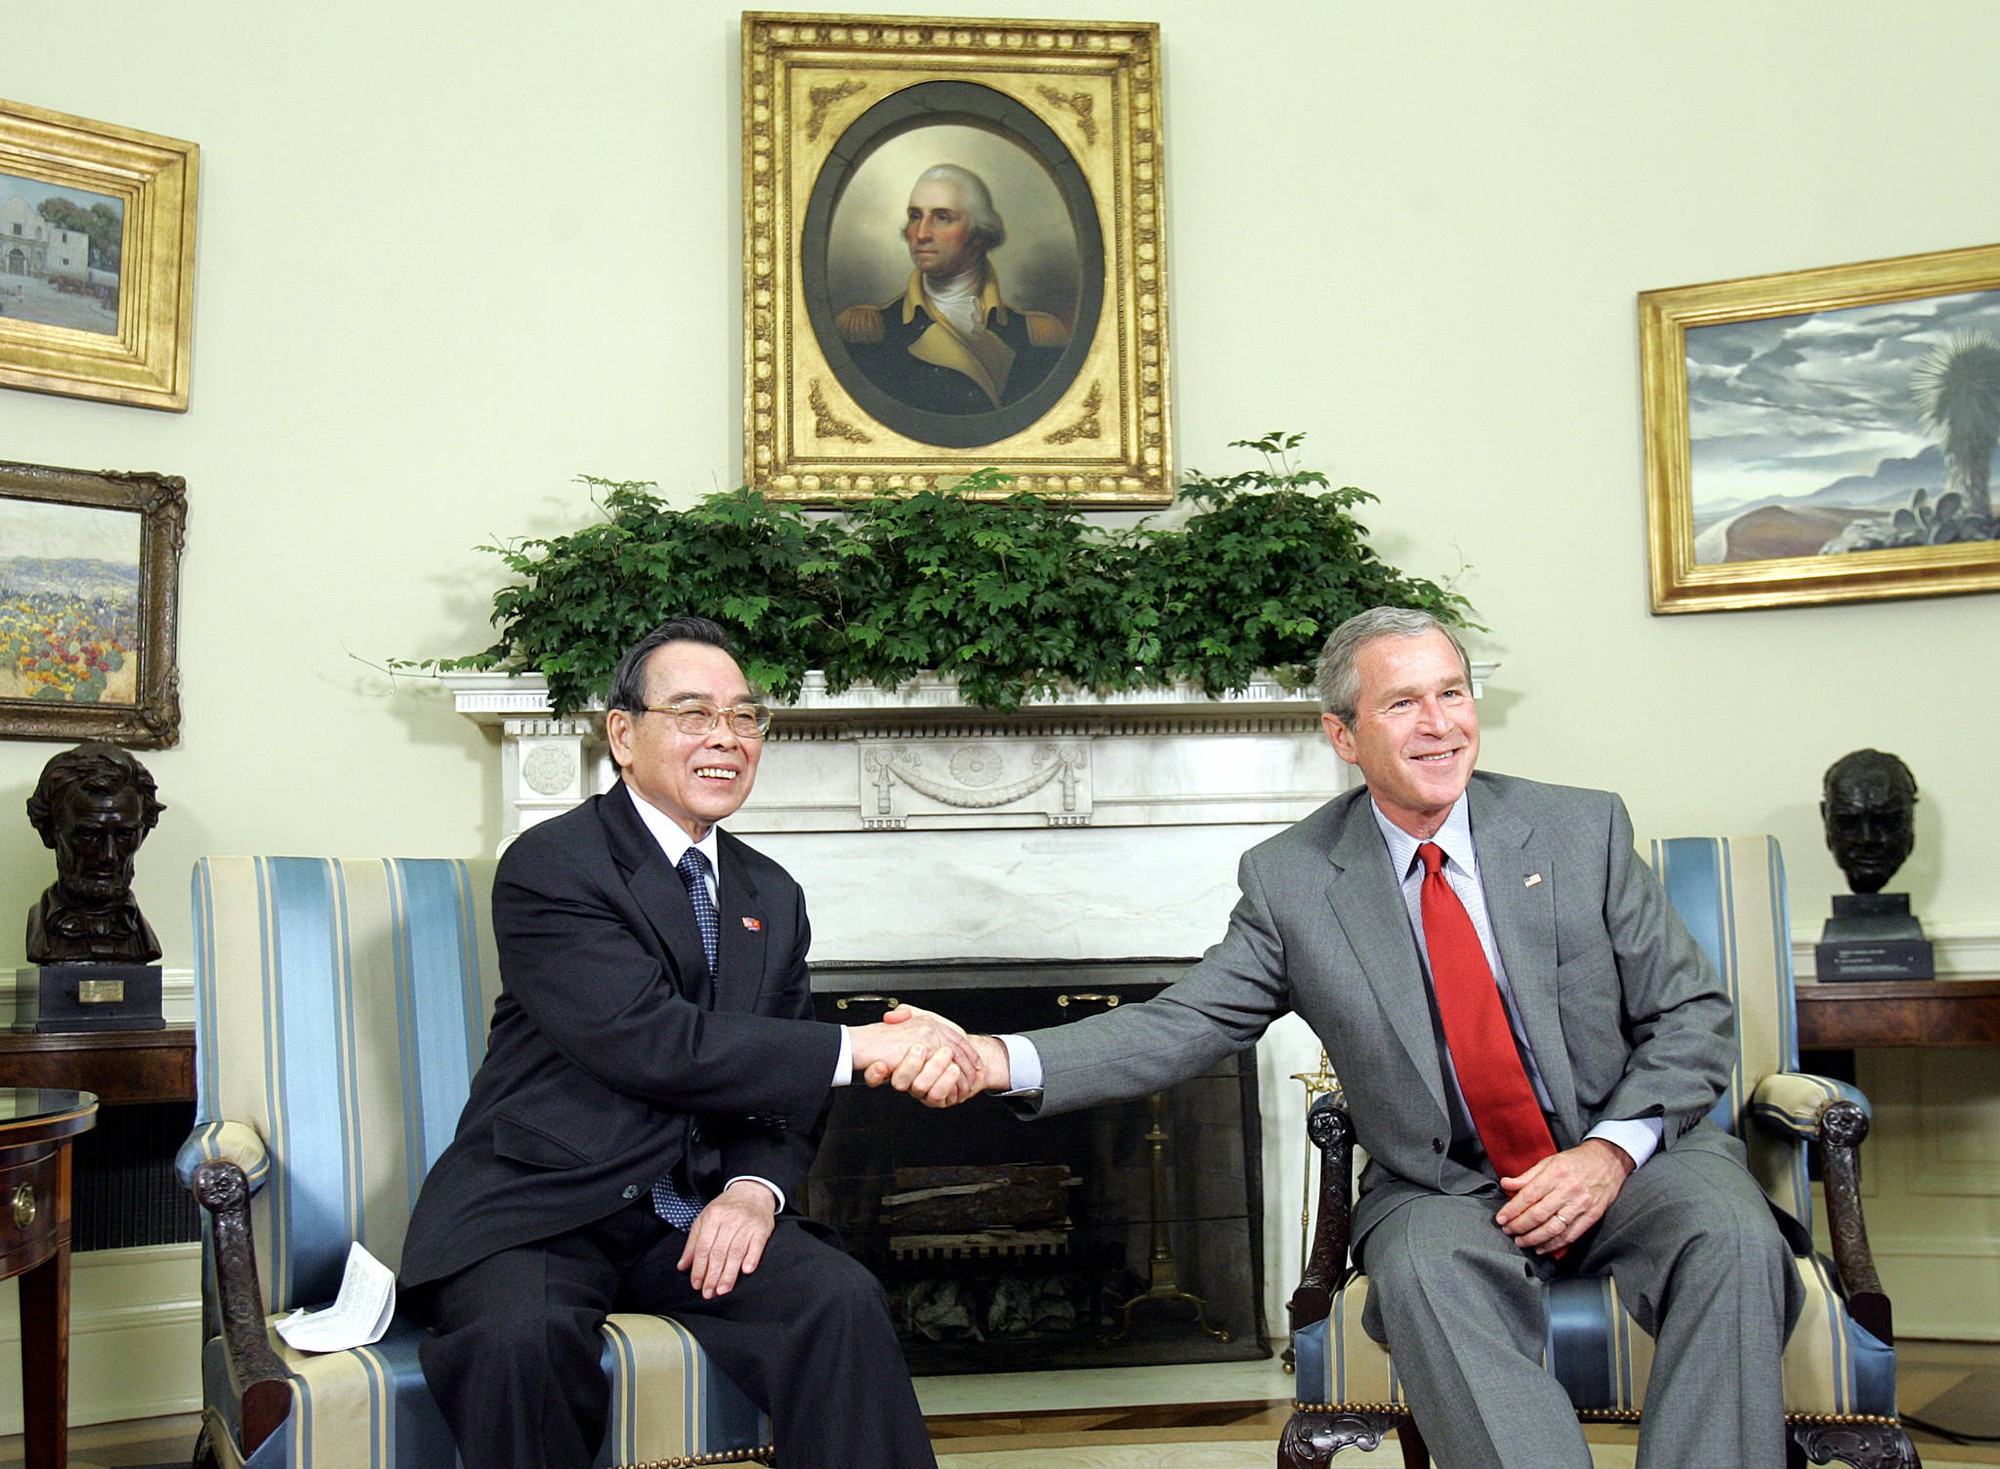 Nguyên Thủ tướng Phan Văn Khải luôn mạnh mẽ cải cách và quyết tâm hội nhập